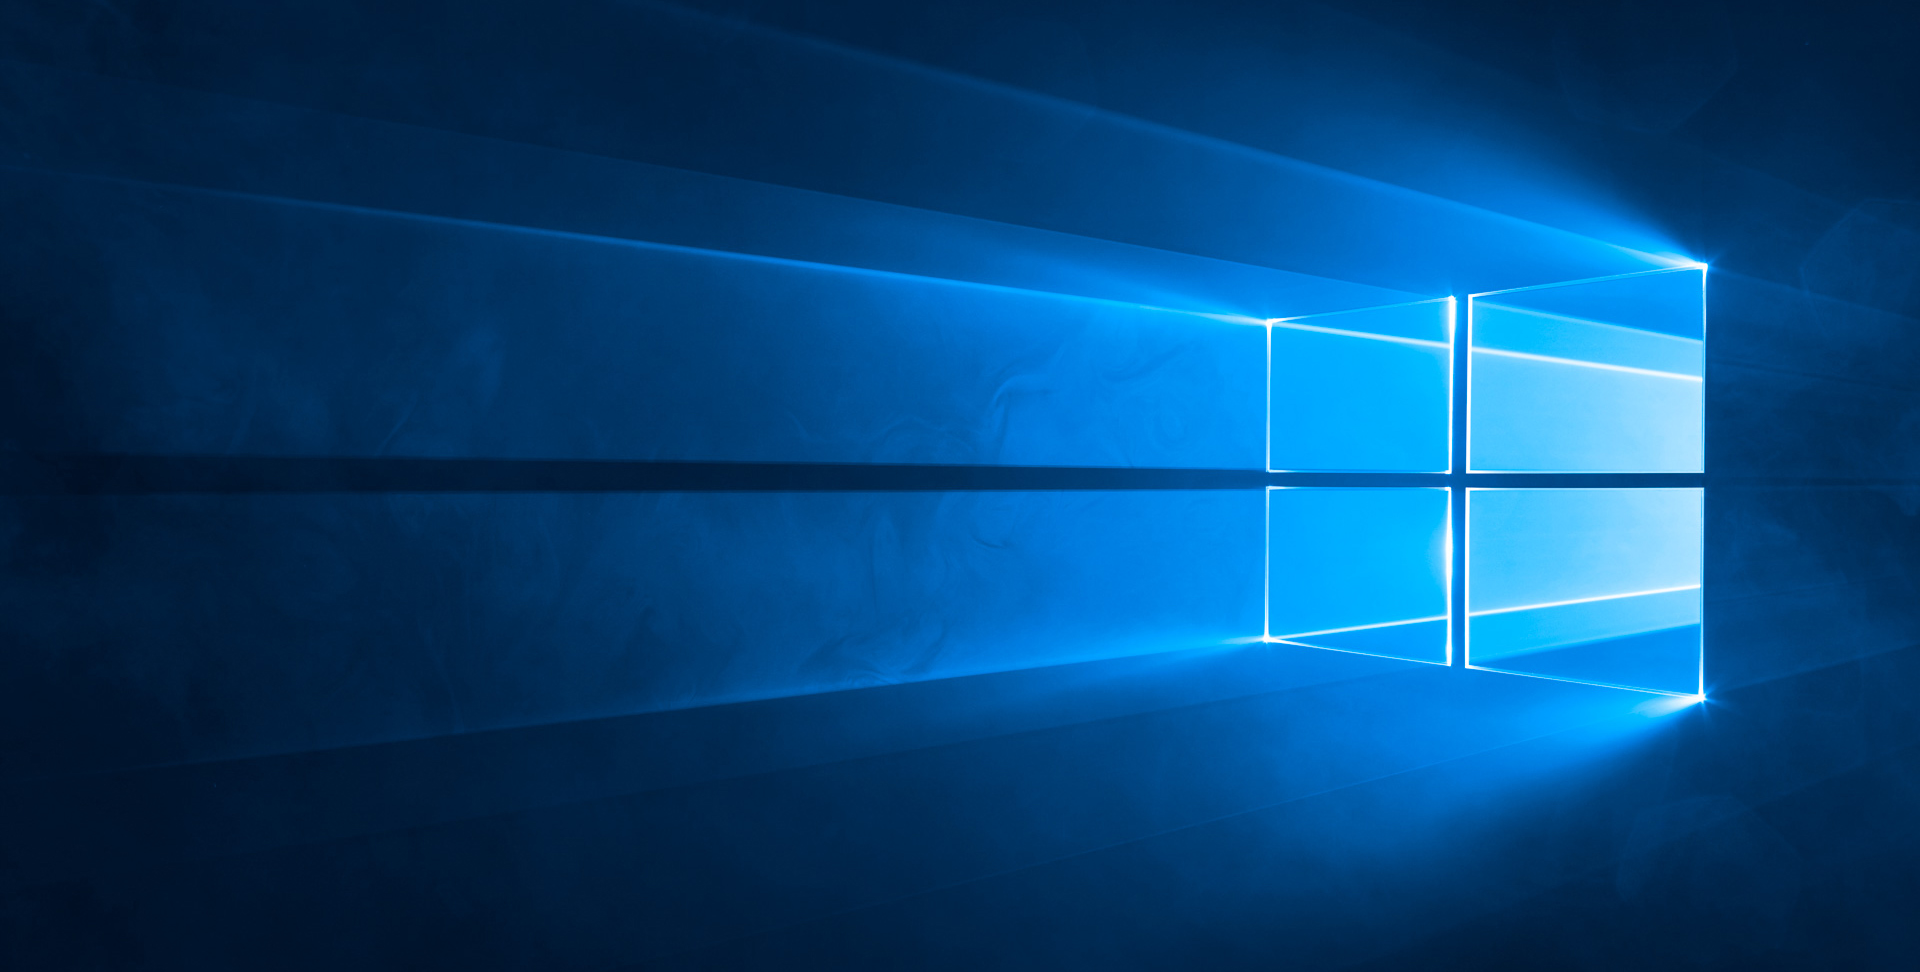 Windows 10 устройств запущены 4 сентября